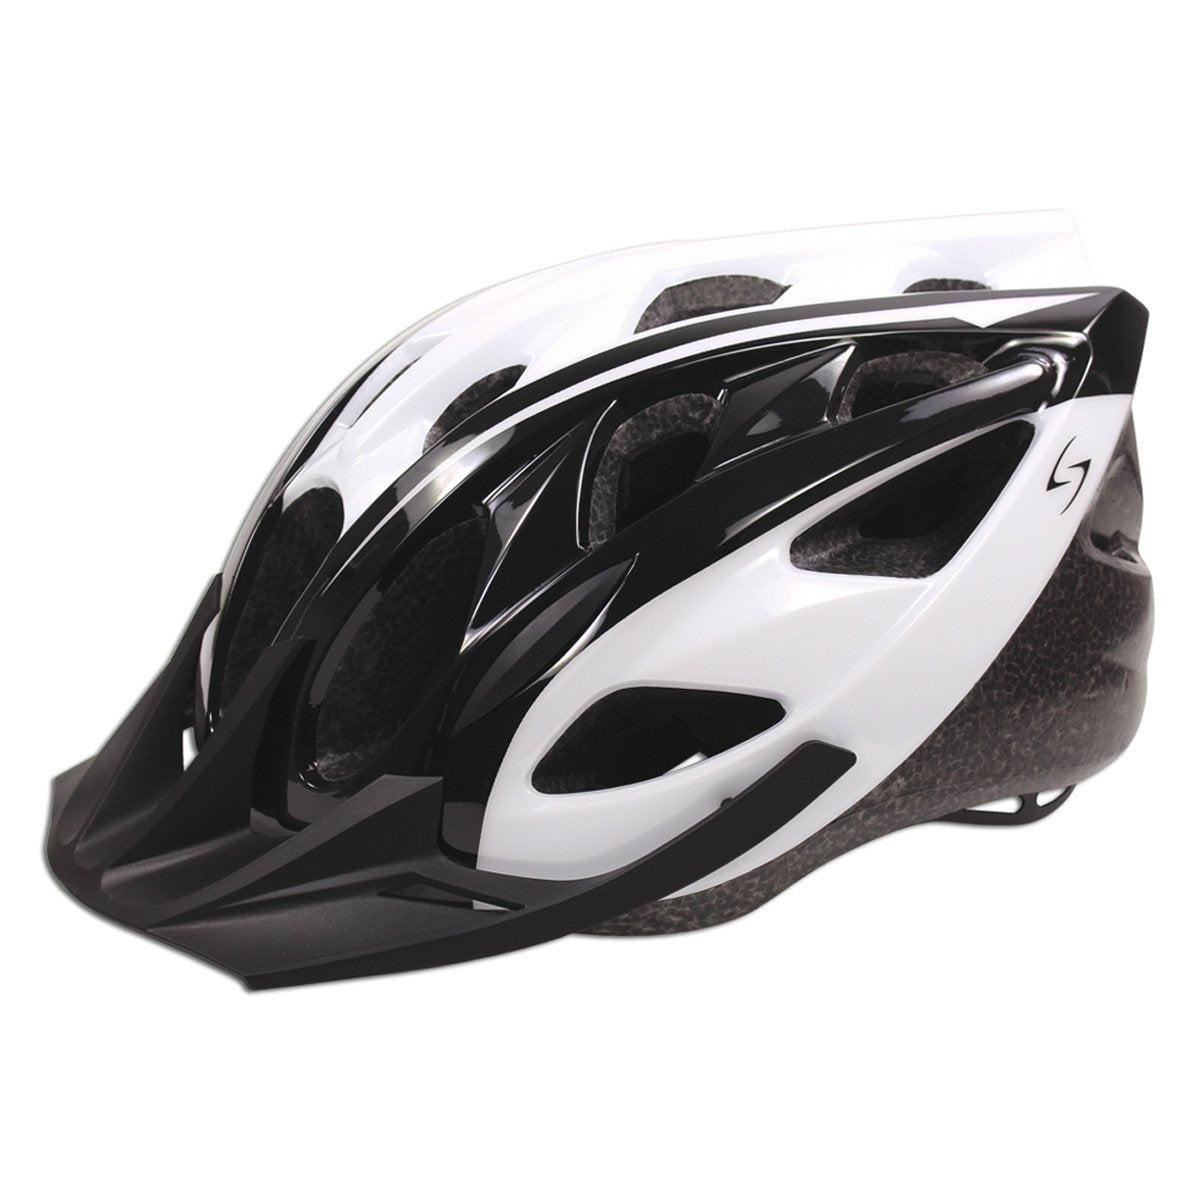 HT-200/204 Karv Helmet (Gloss White/Gloss Black)